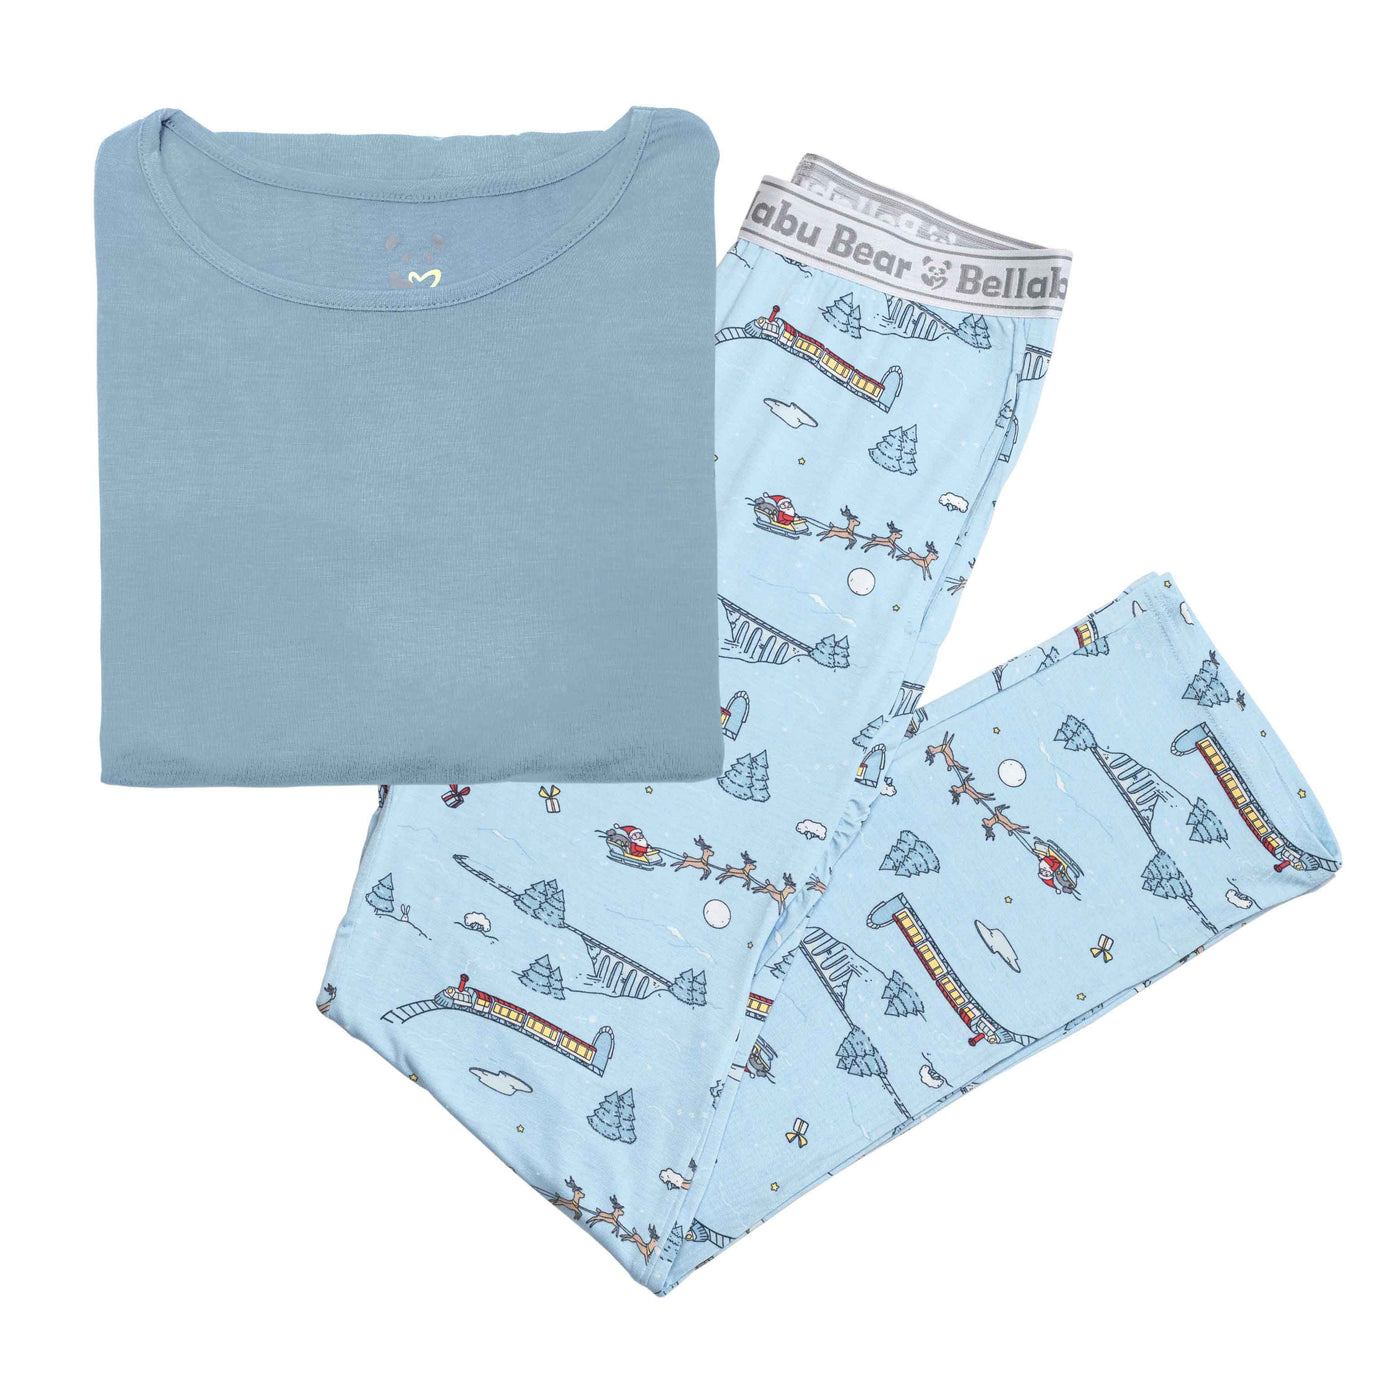 Polar Express Men's Pajama Set